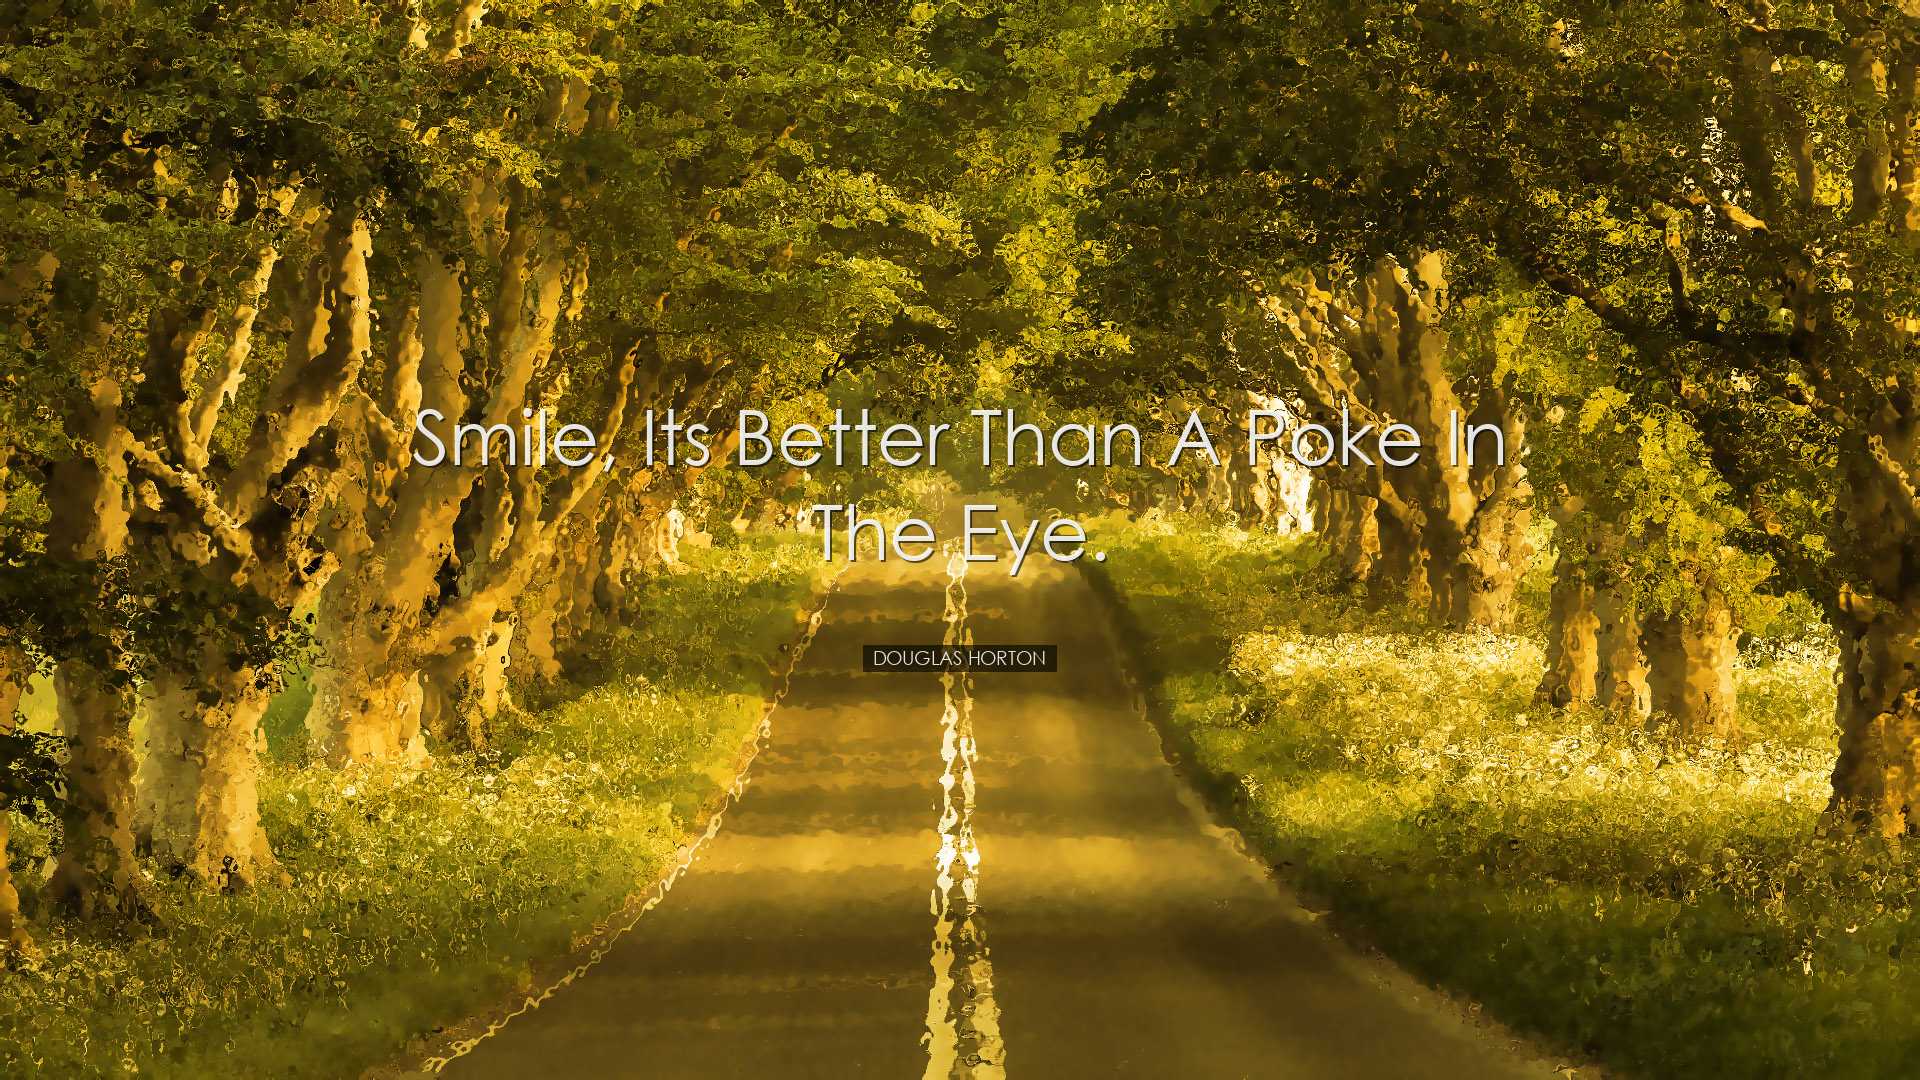 Smile, its better than a poke in the eye. - Douglas Horton